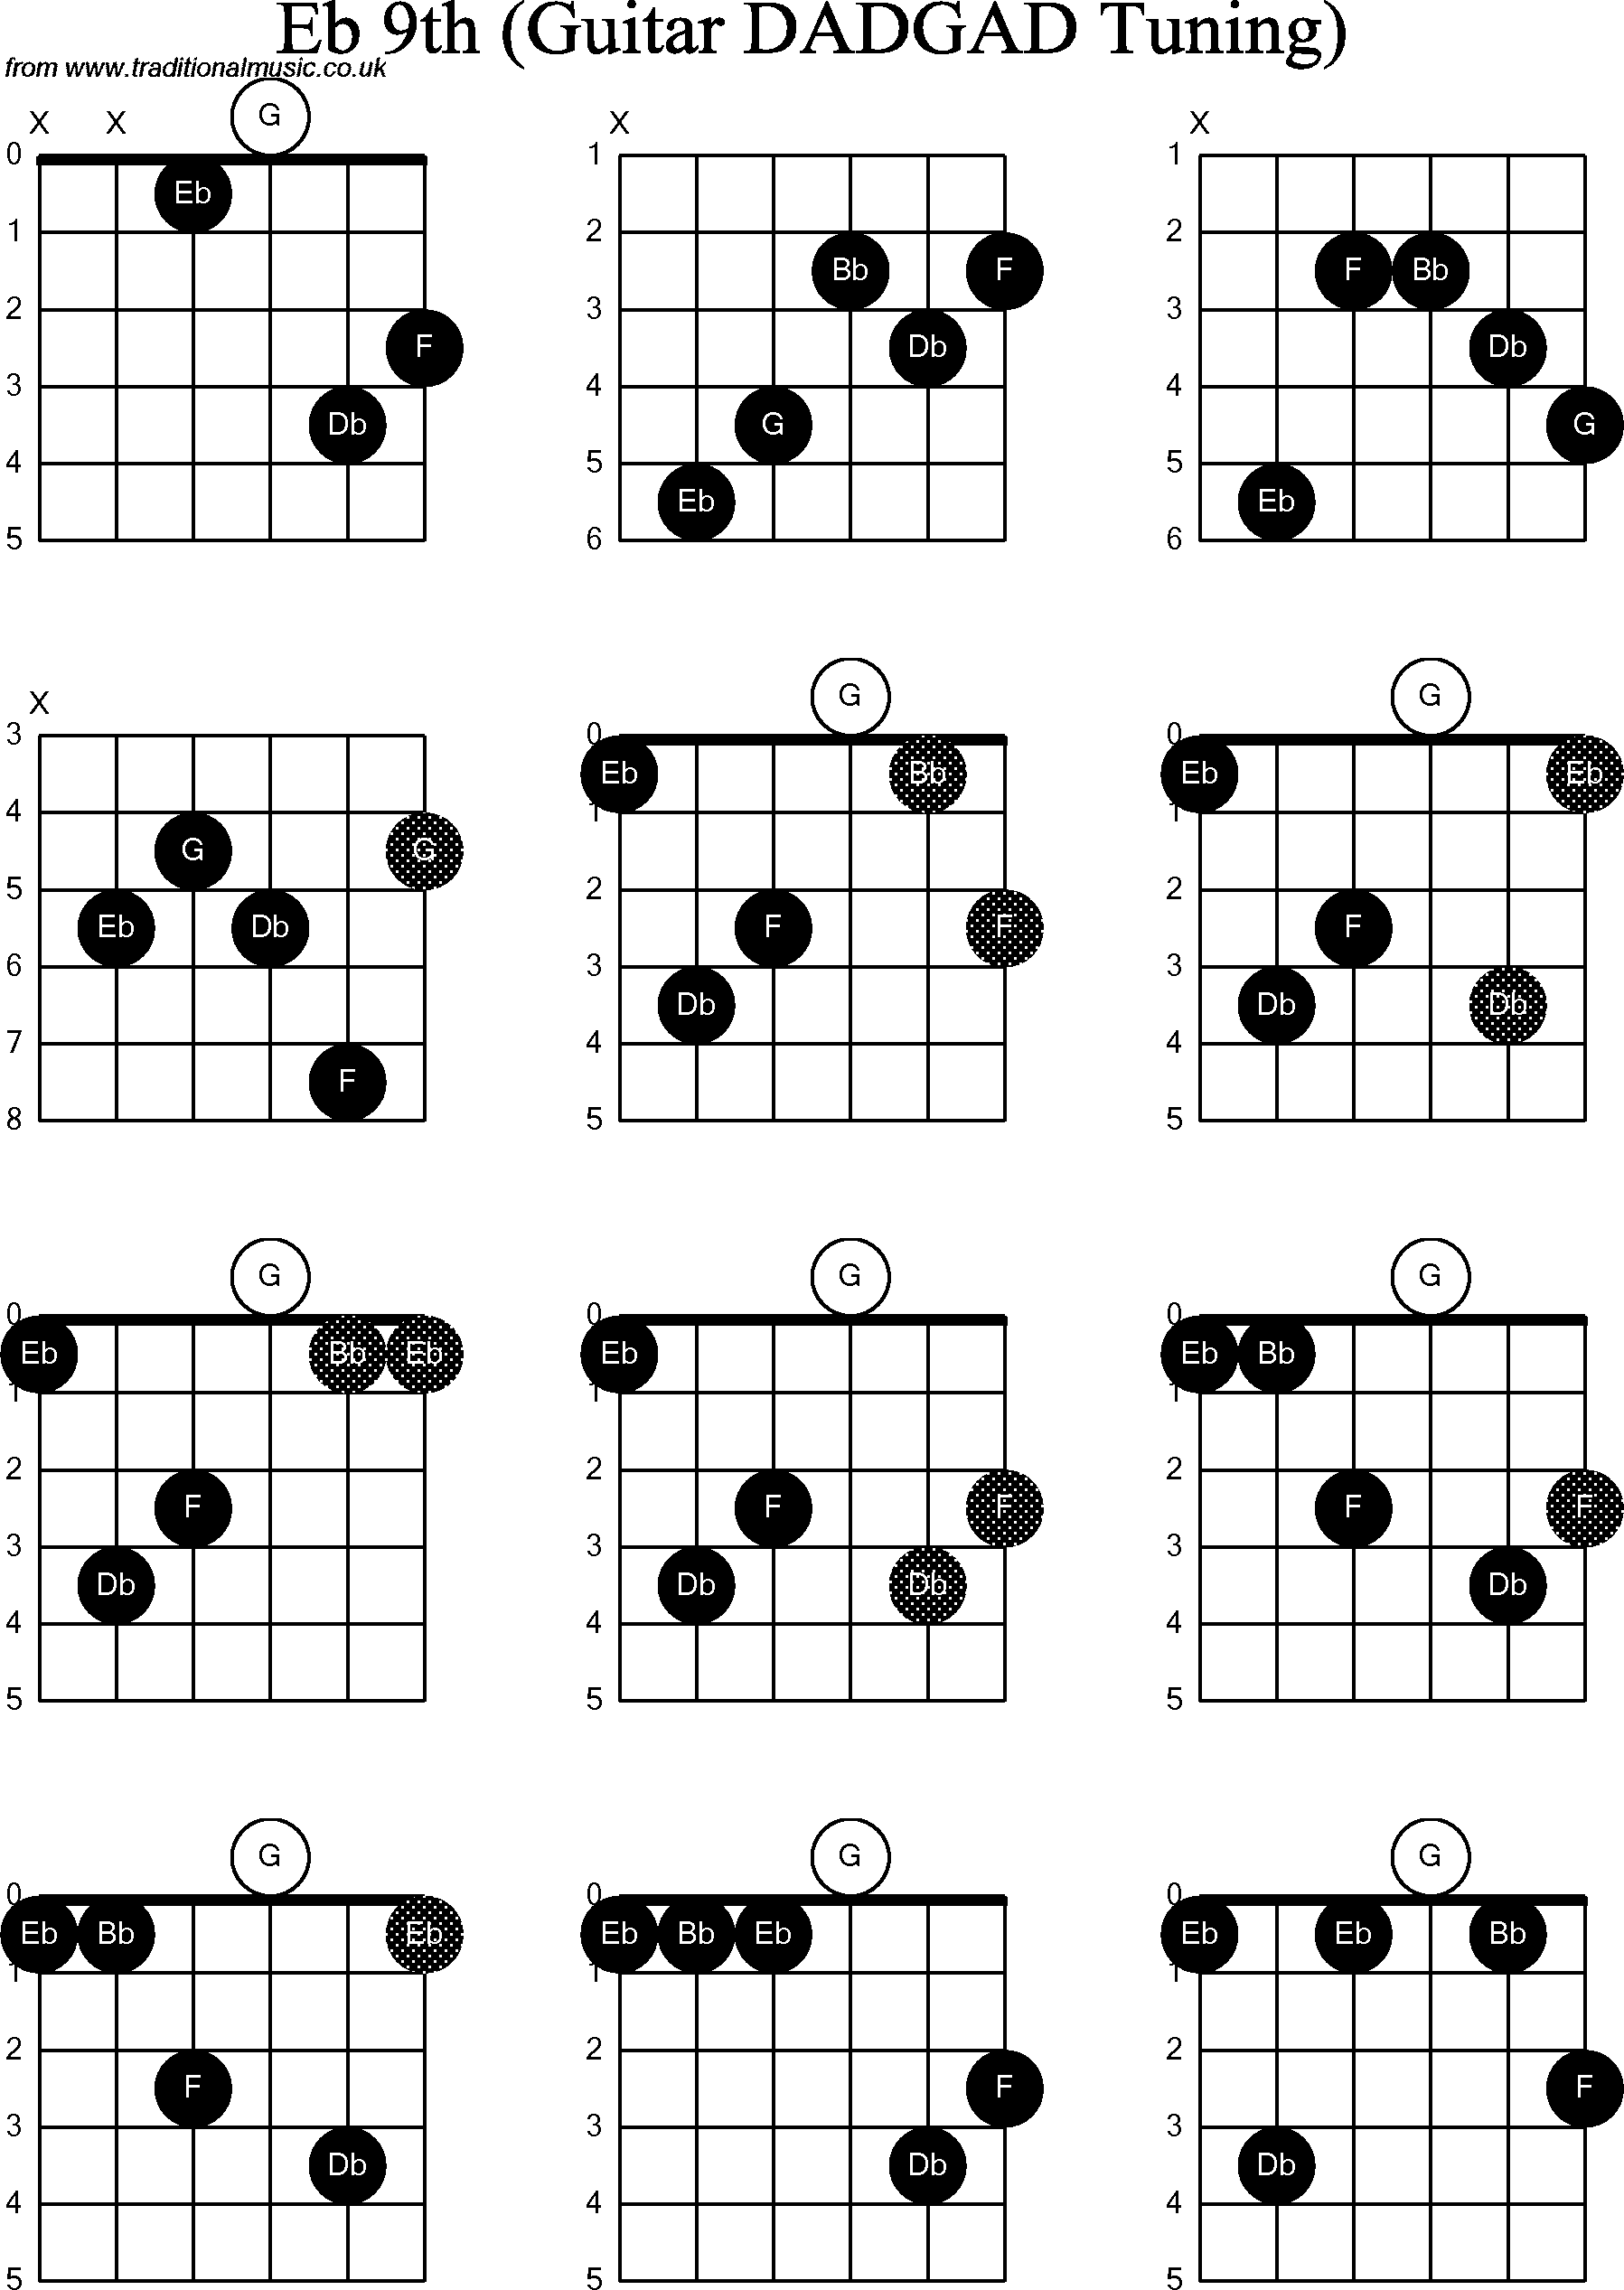 Chord Diagrams D Modal Guitar Dadgad Eb9th